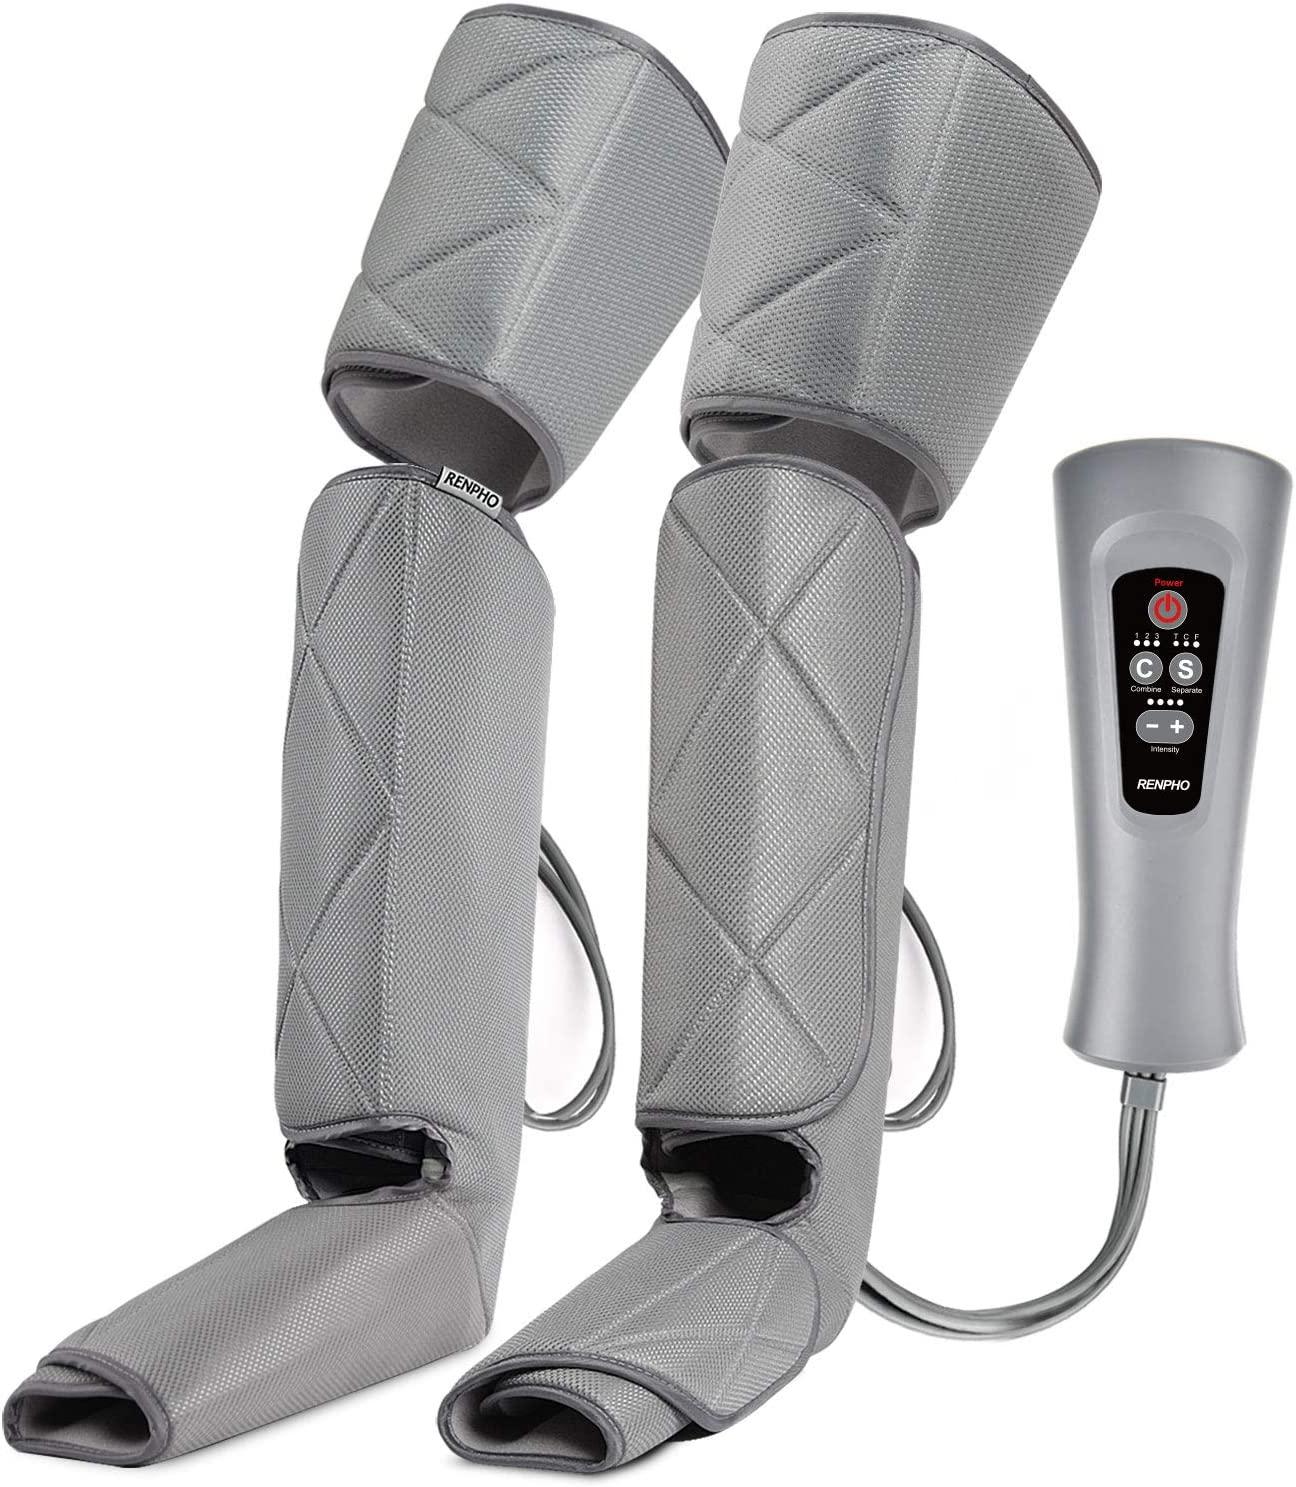 جهاز مساج الأرجل الإحترافي Portable Leg Massager for Circulation and Relaxation